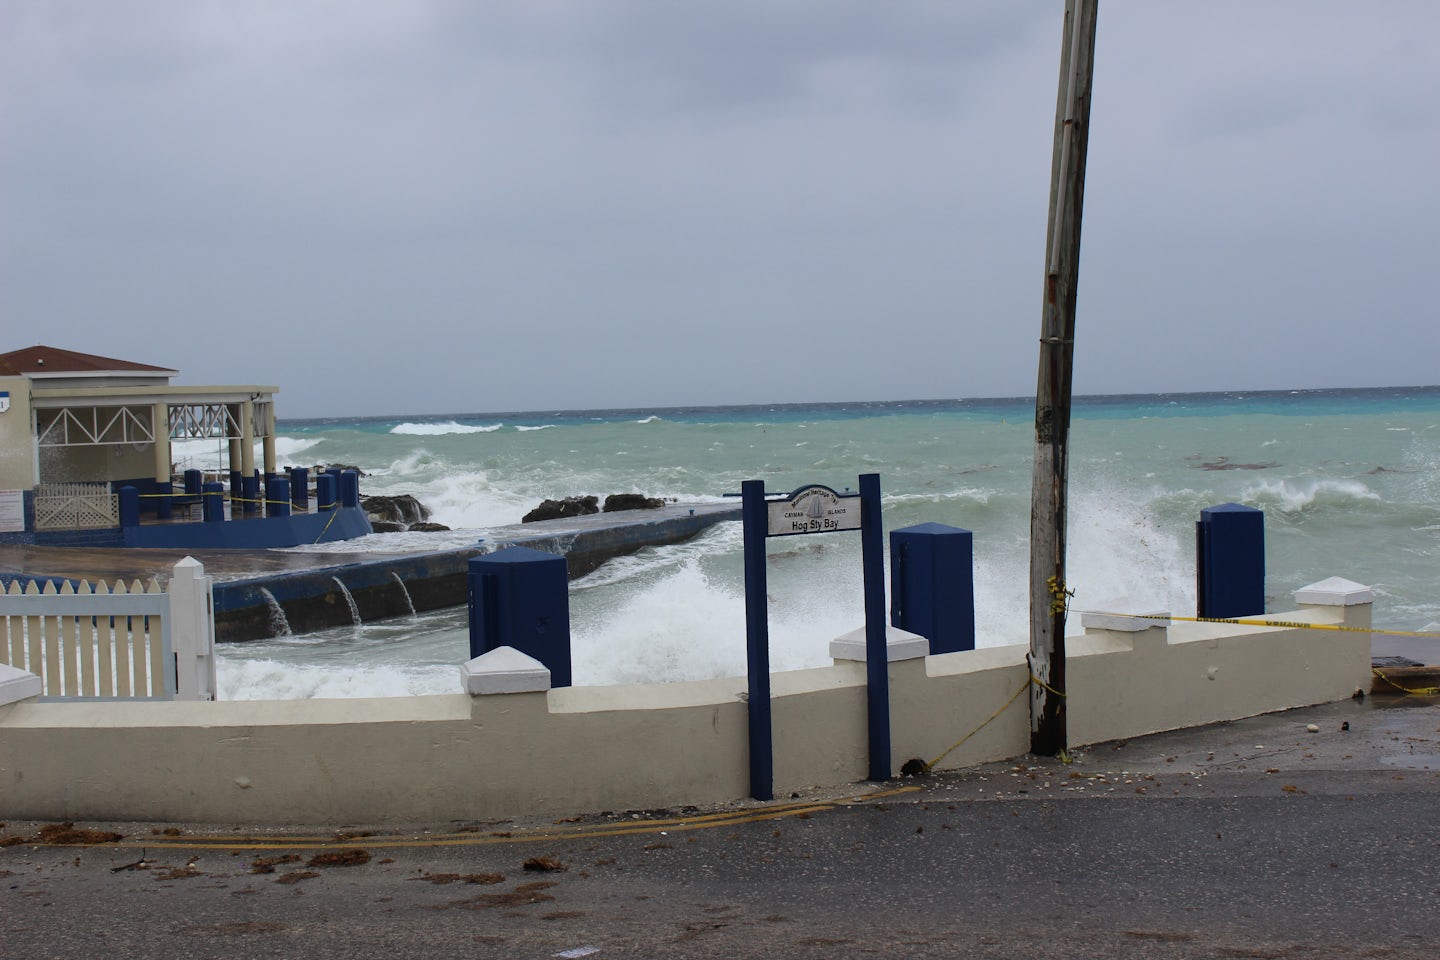 Rough, choppy seas at Grand Cayman